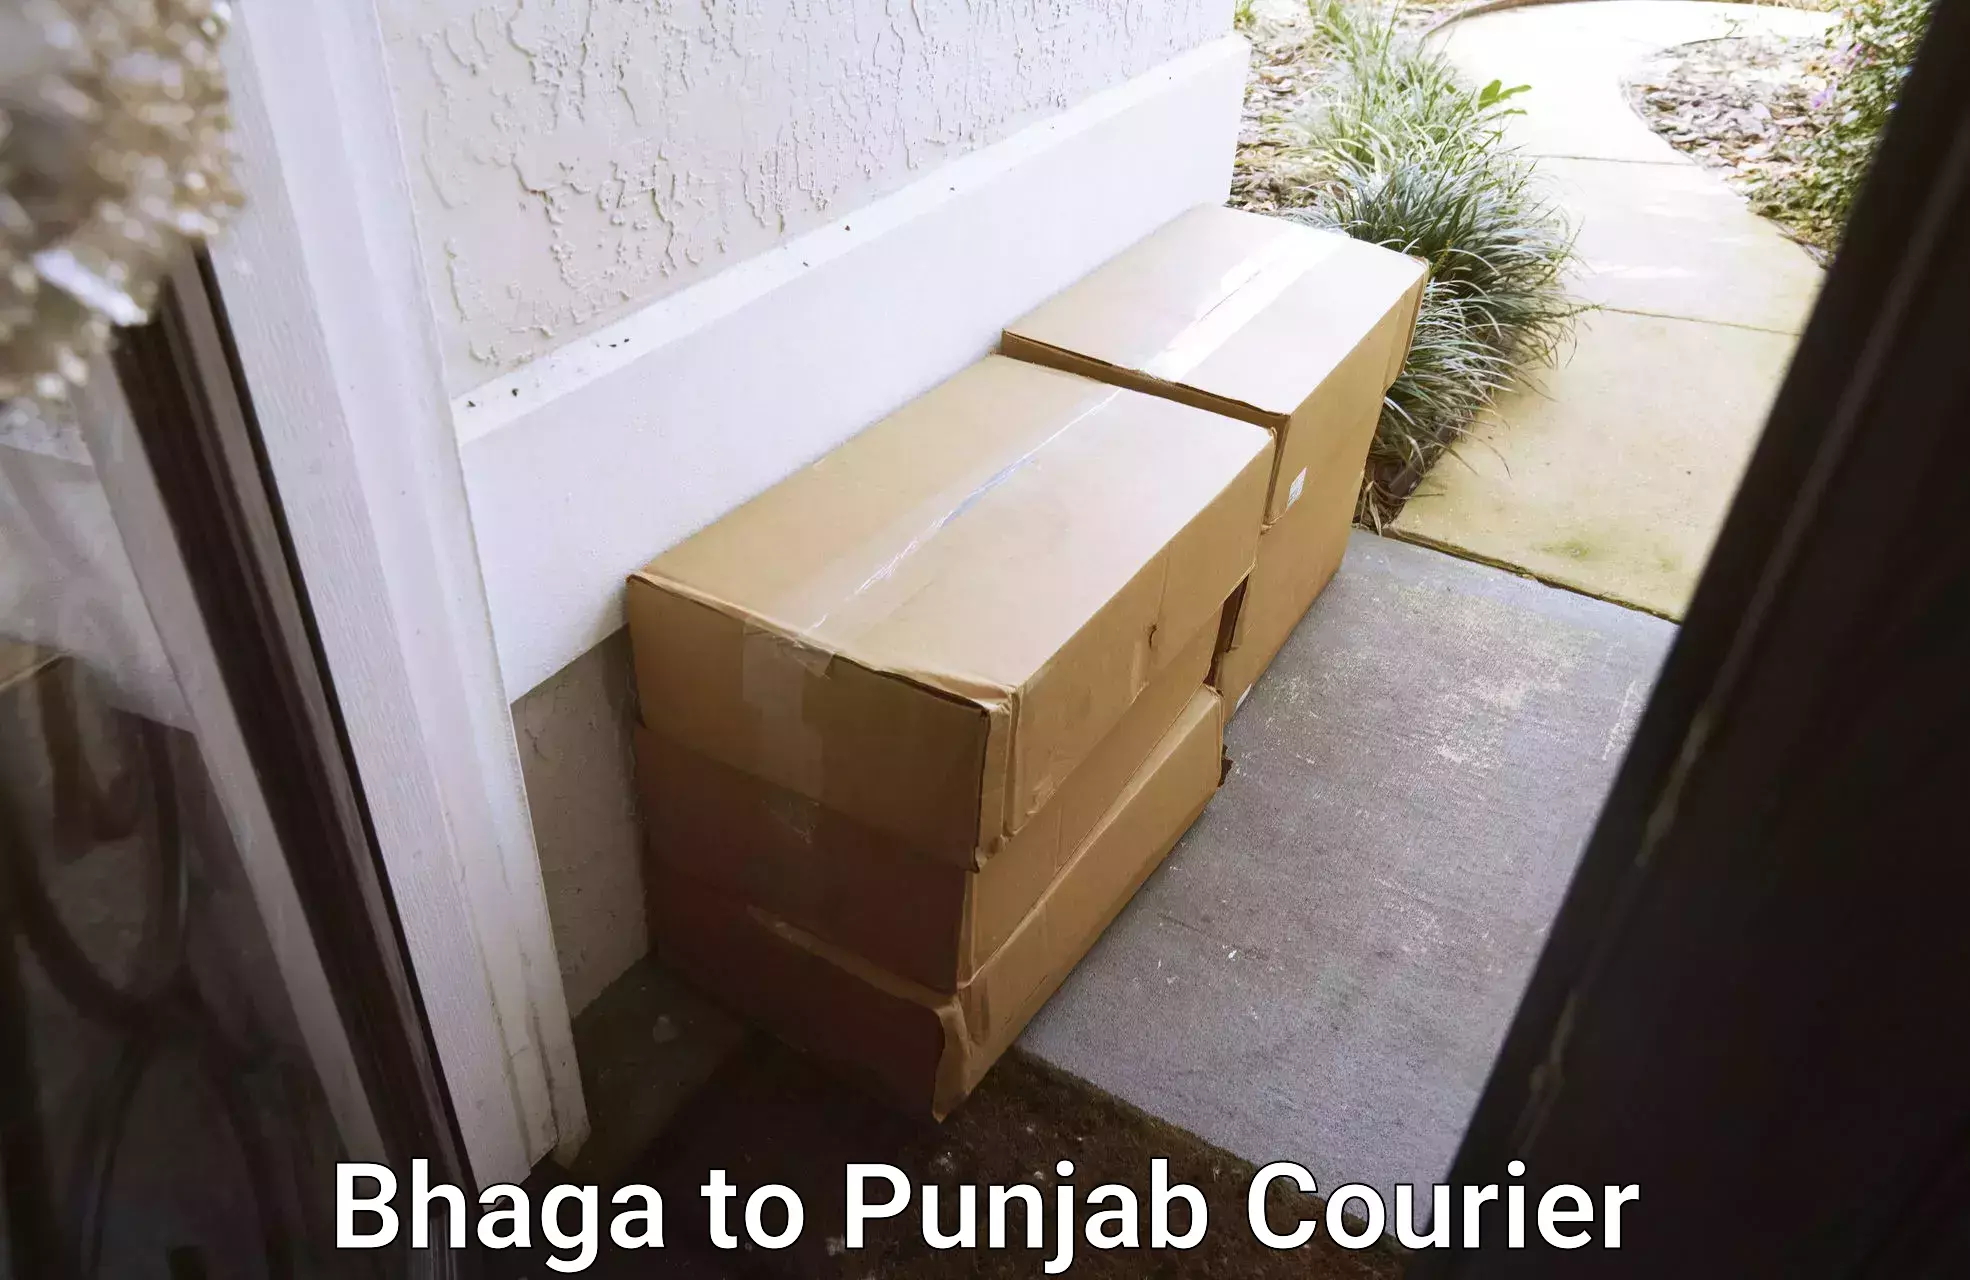 Bulk shipment Bhaga to Punjab